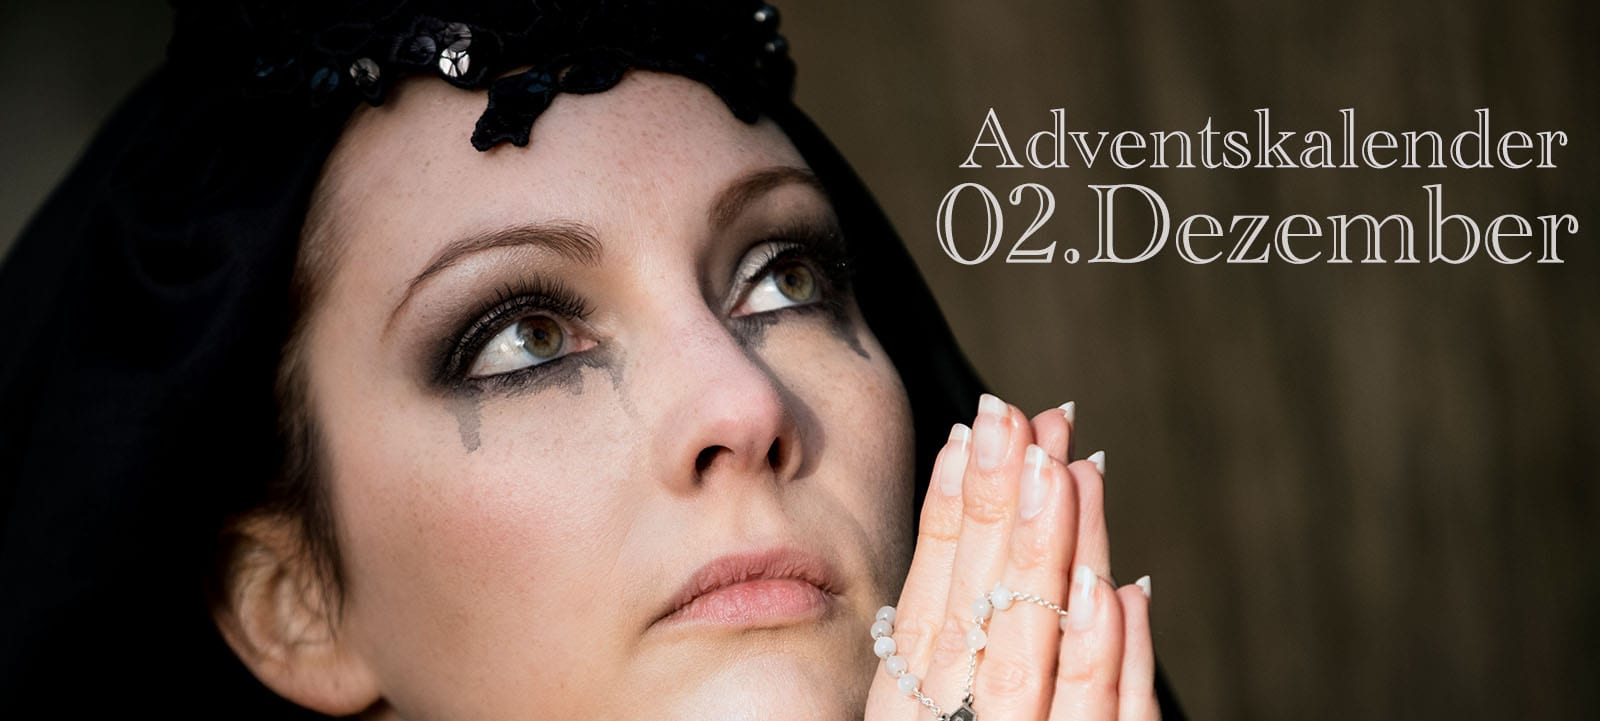 Adventskalender 02.12. – Die schwarze Witwe (Portrait)